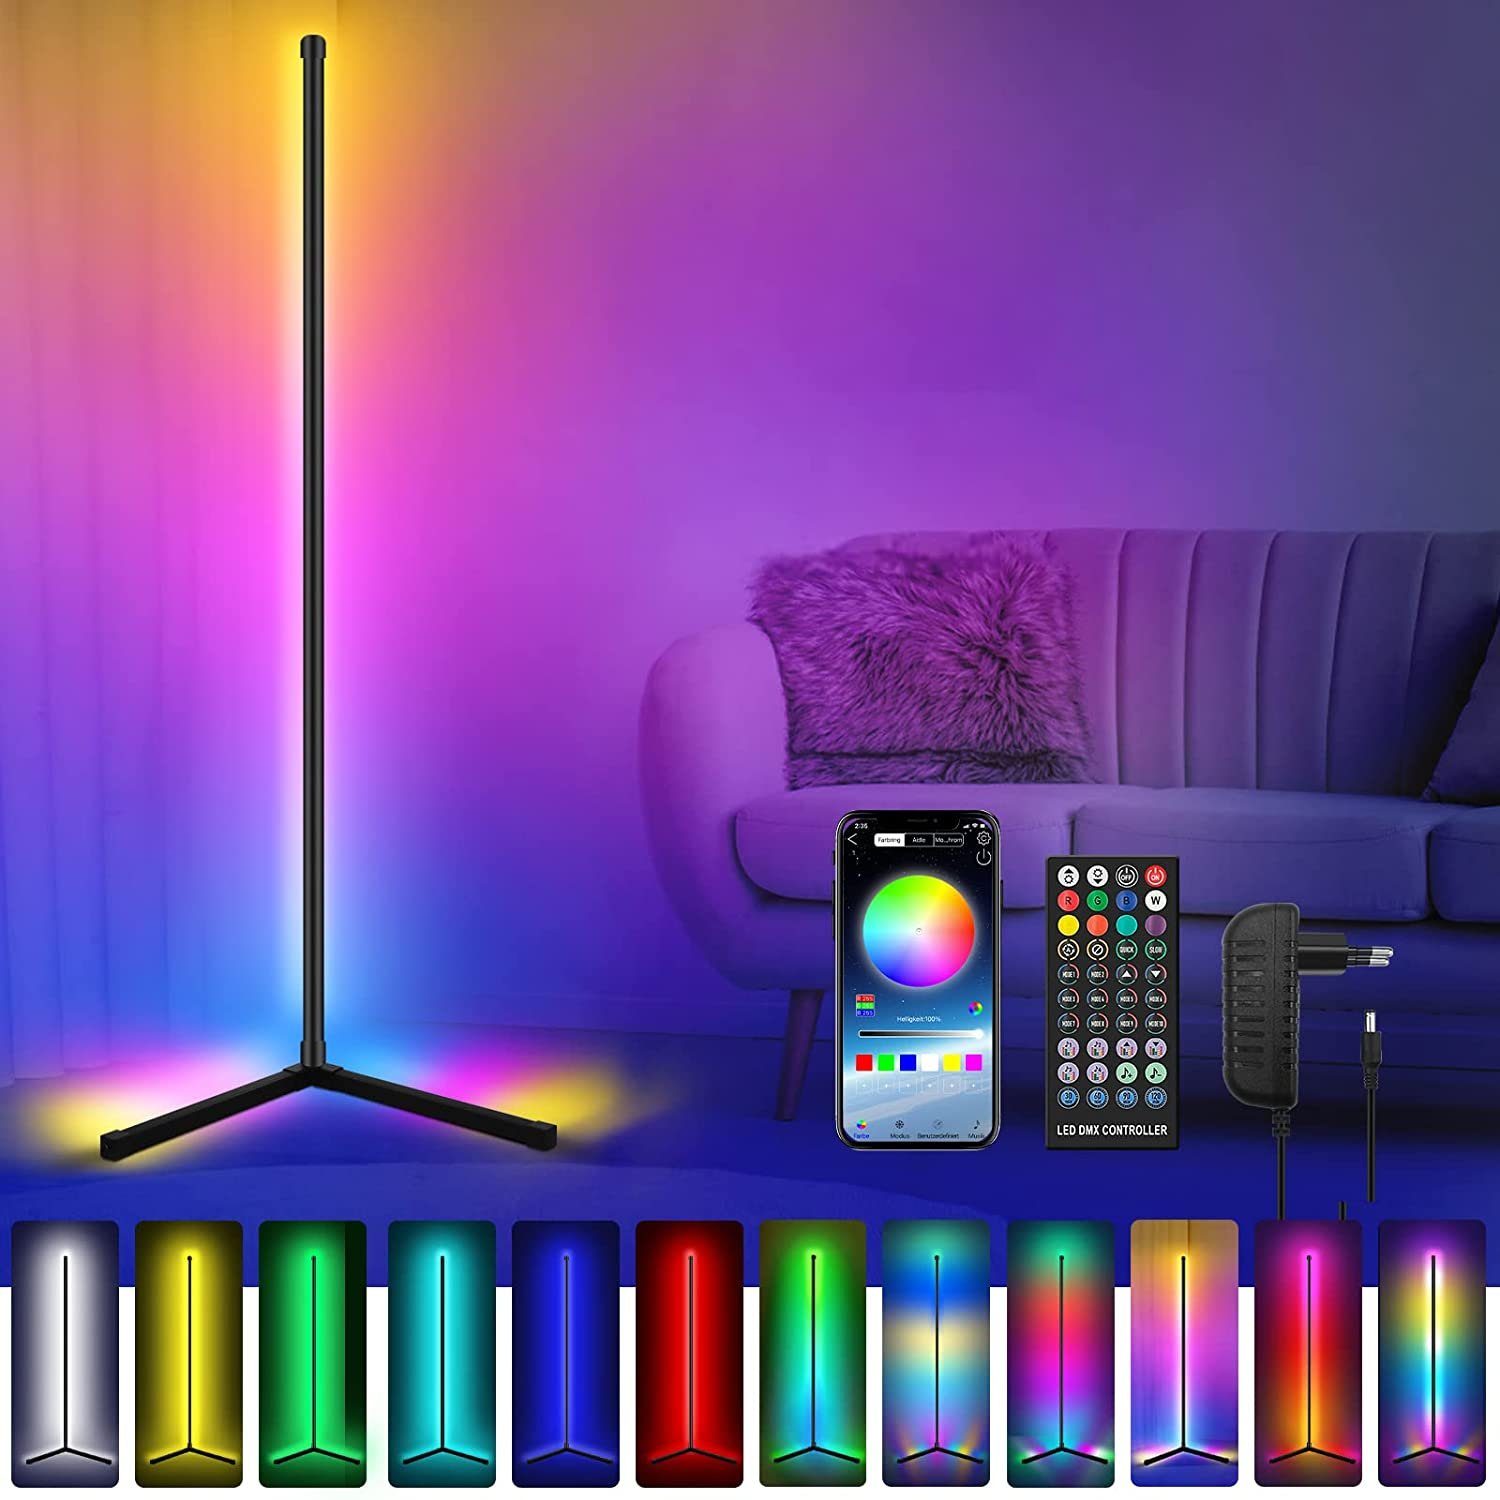 XIIW LED Lichtleiste LED Stehlampe Dimmbar Farbwechsel Wohnzimmer mit Fernbedienung, LED wechselbar, App Steuerbar mit Musik Snyc,Timer, RGB Stehlampe mit 16 Millionen Farben,120cm